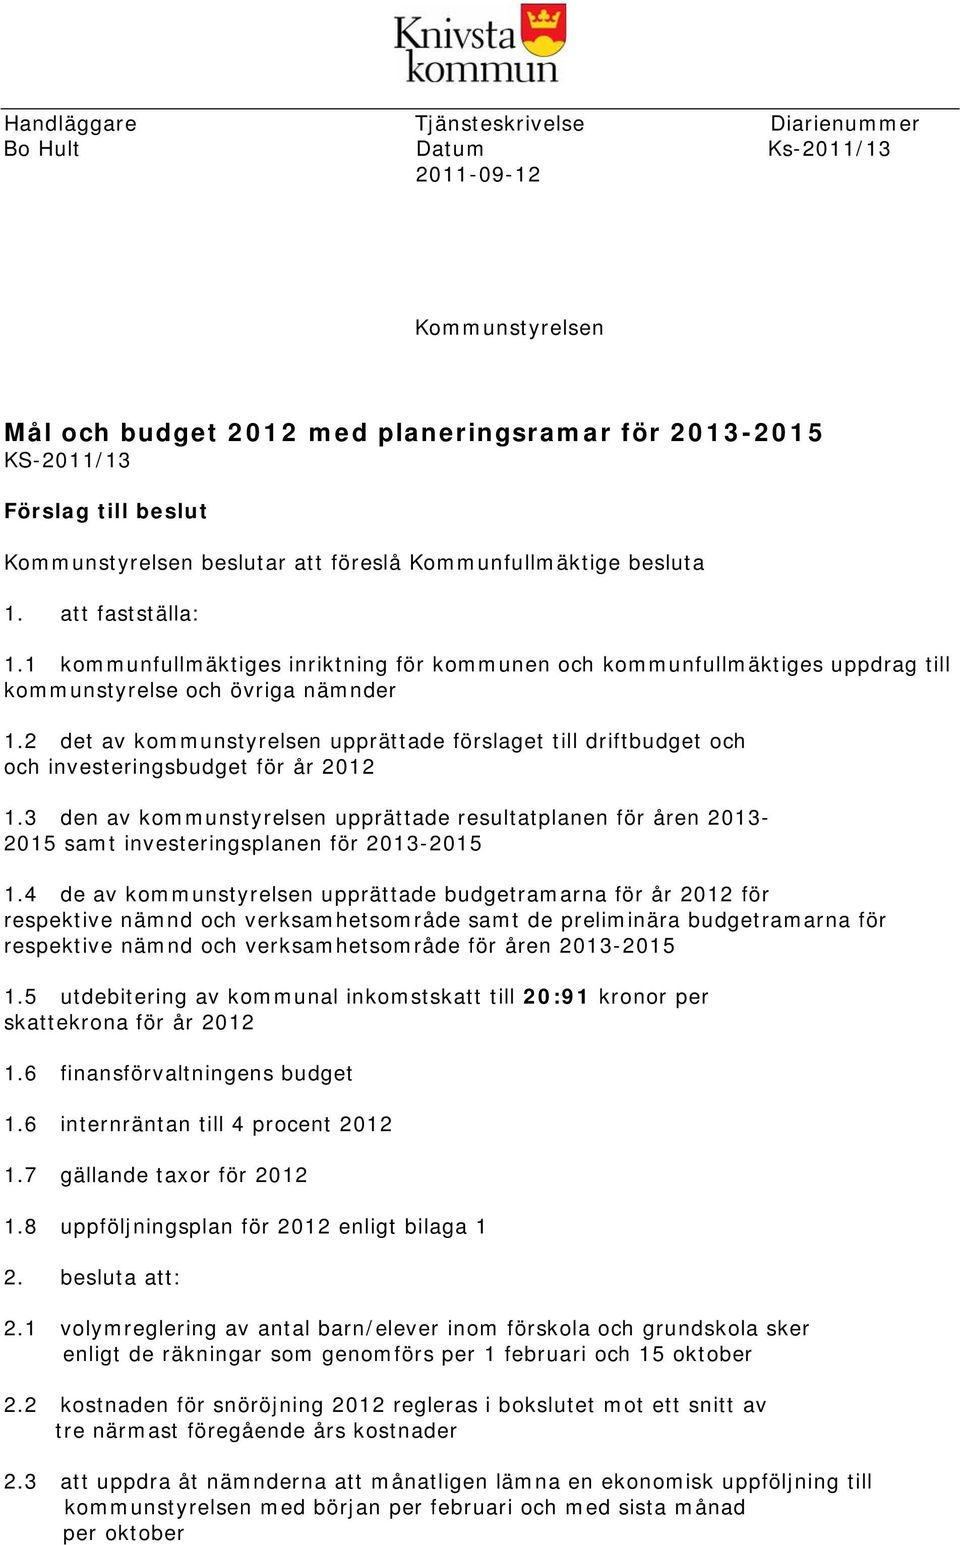 2 det av kommunstyrelsen upprättade förslaget till driftbudget och och investeringsbudget för år 2012 1.